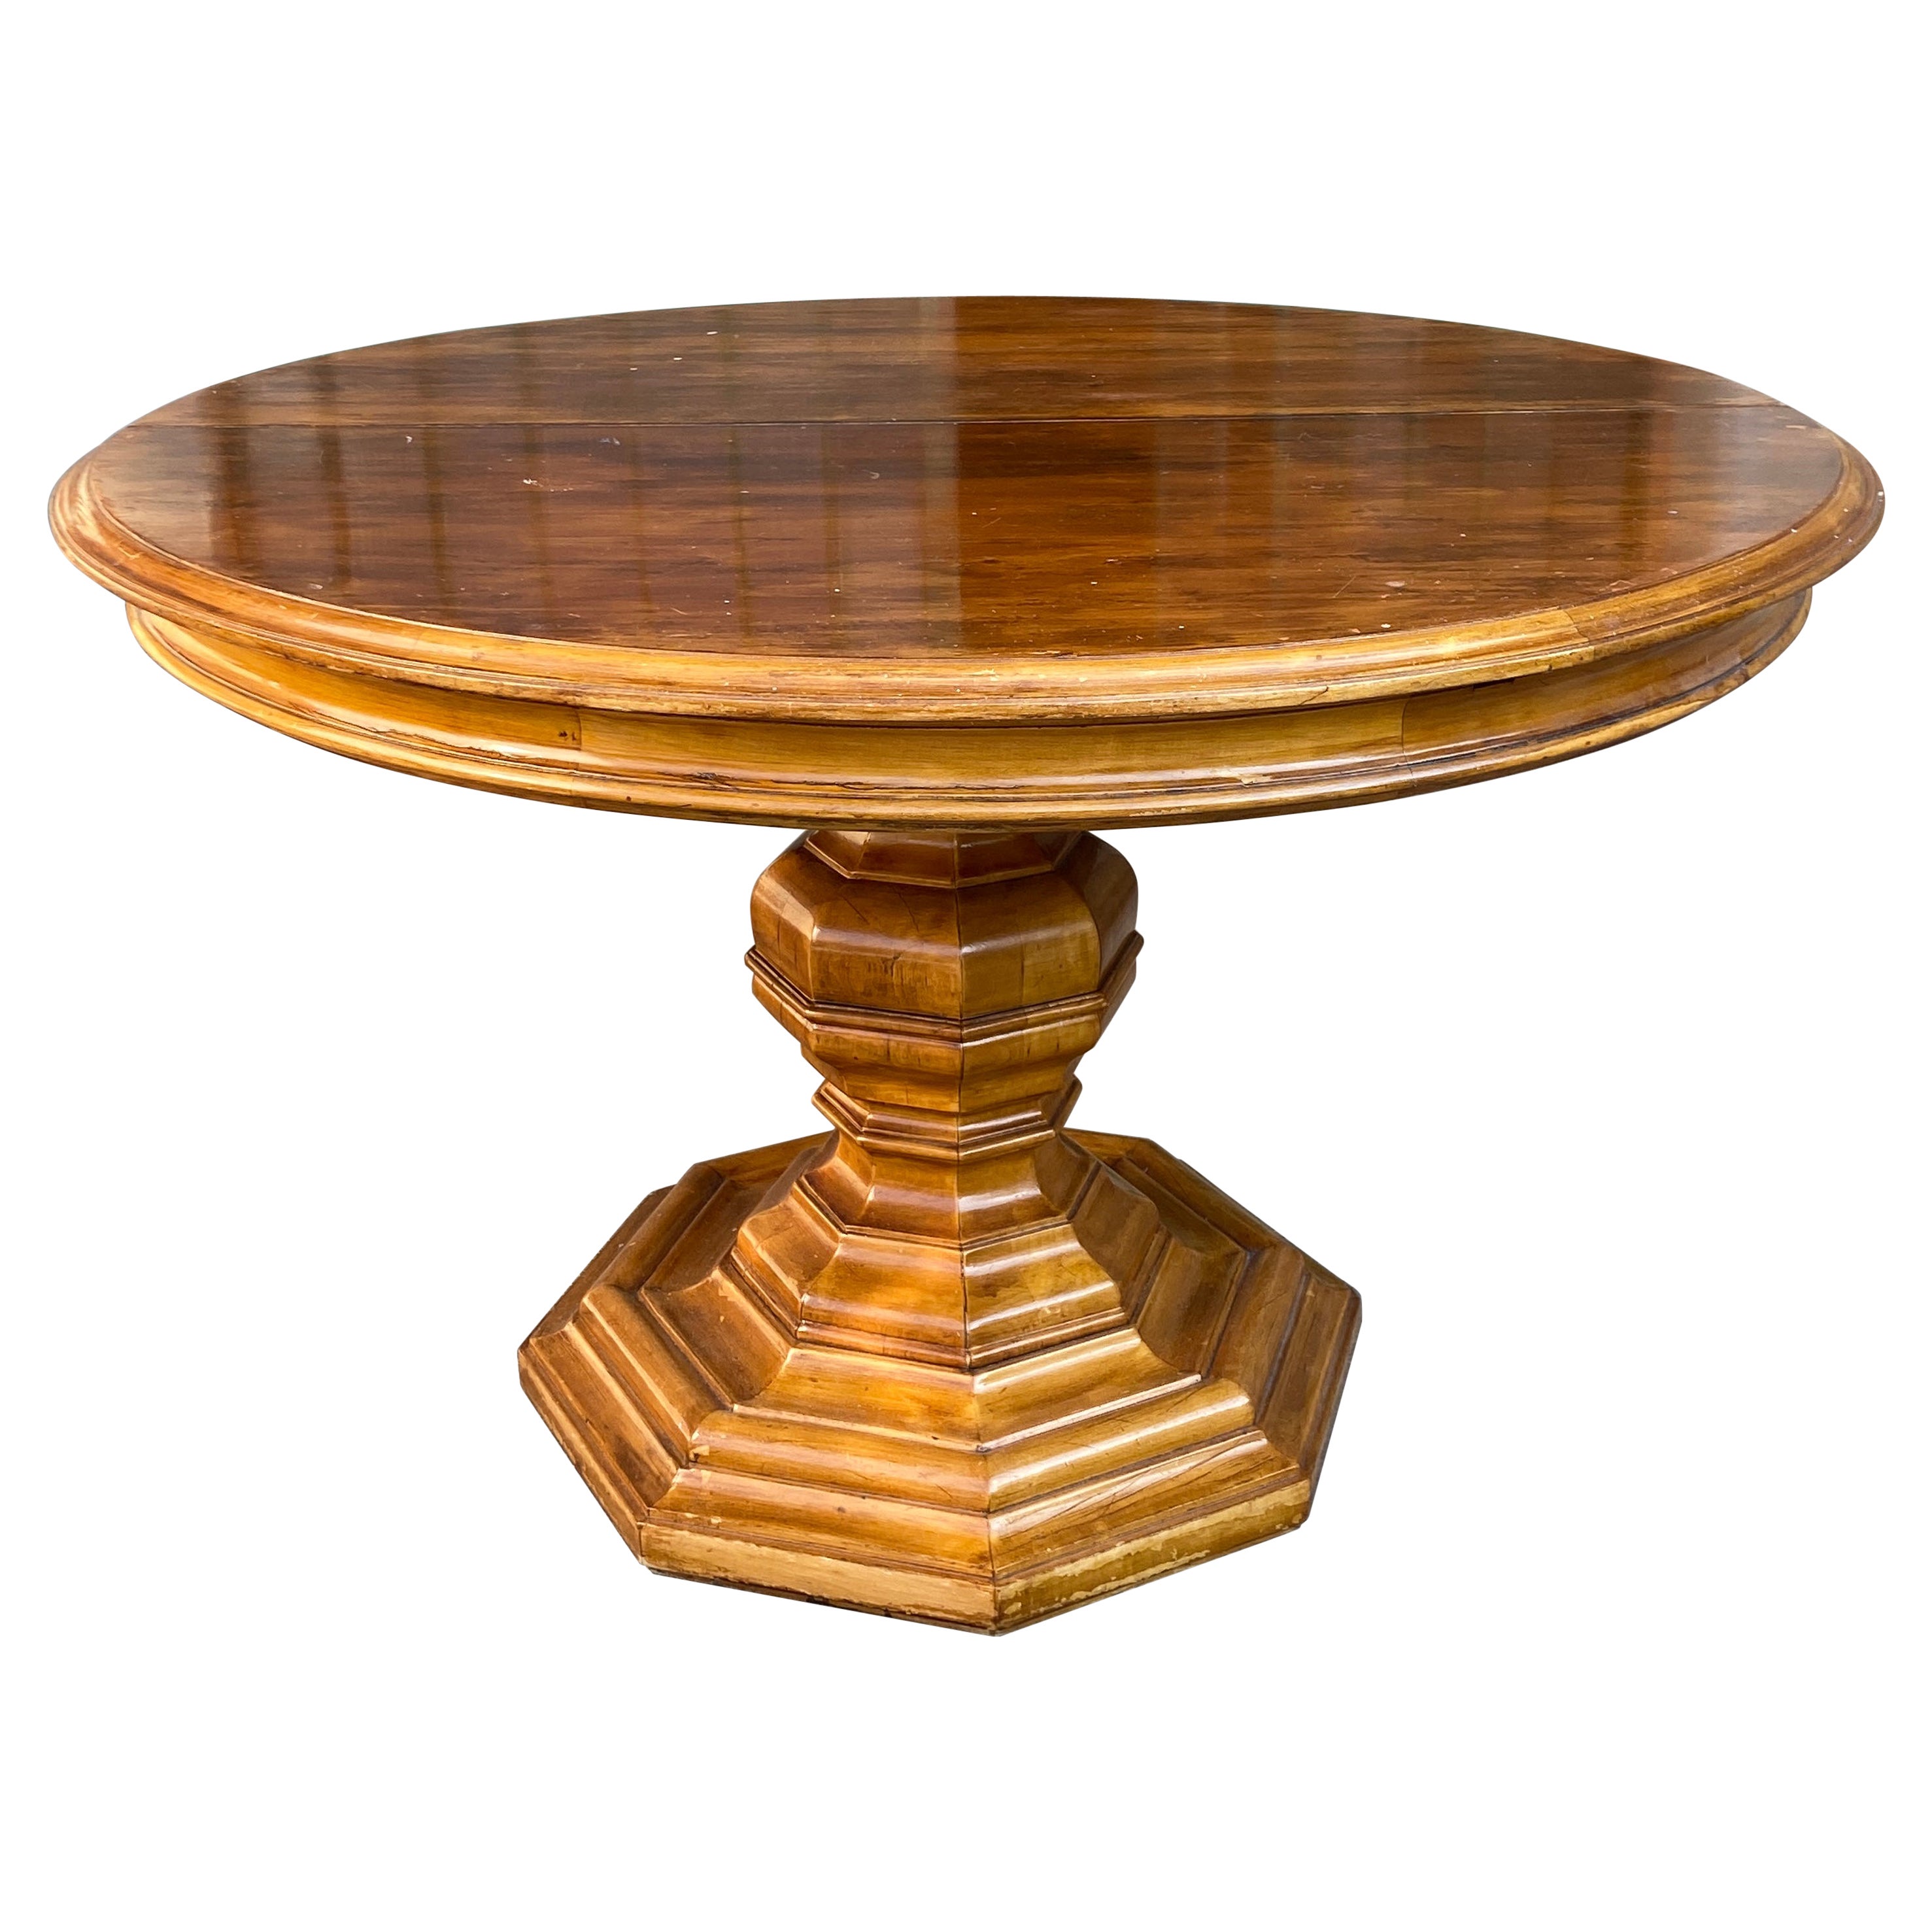 Table octogonale italienne réglable du 19ème siècle avec pied en bois façonné